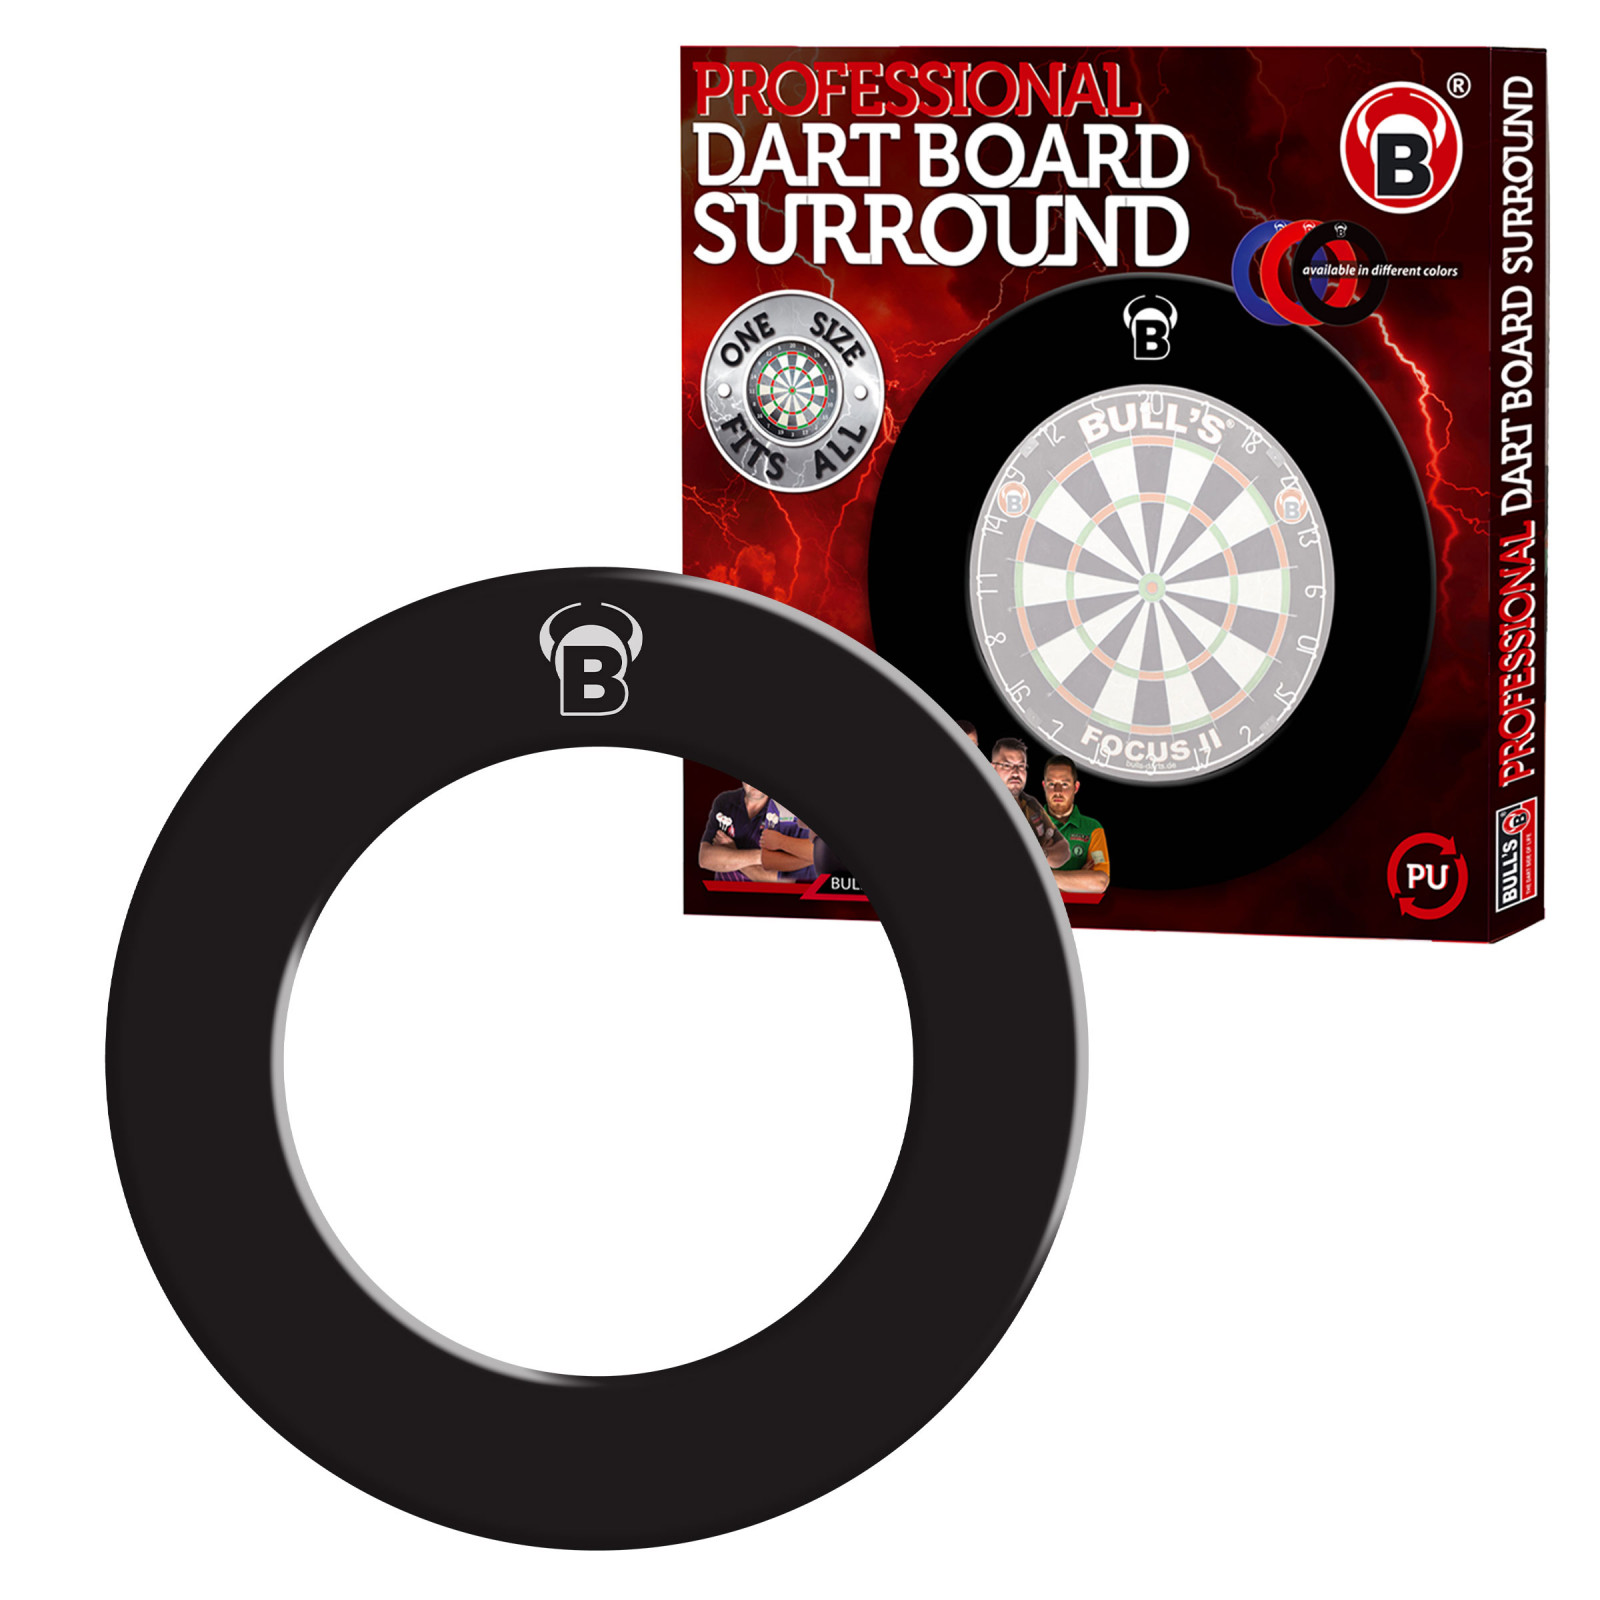 Pro Bull's Dartboard Surround - Schwarz mit Aufdruck